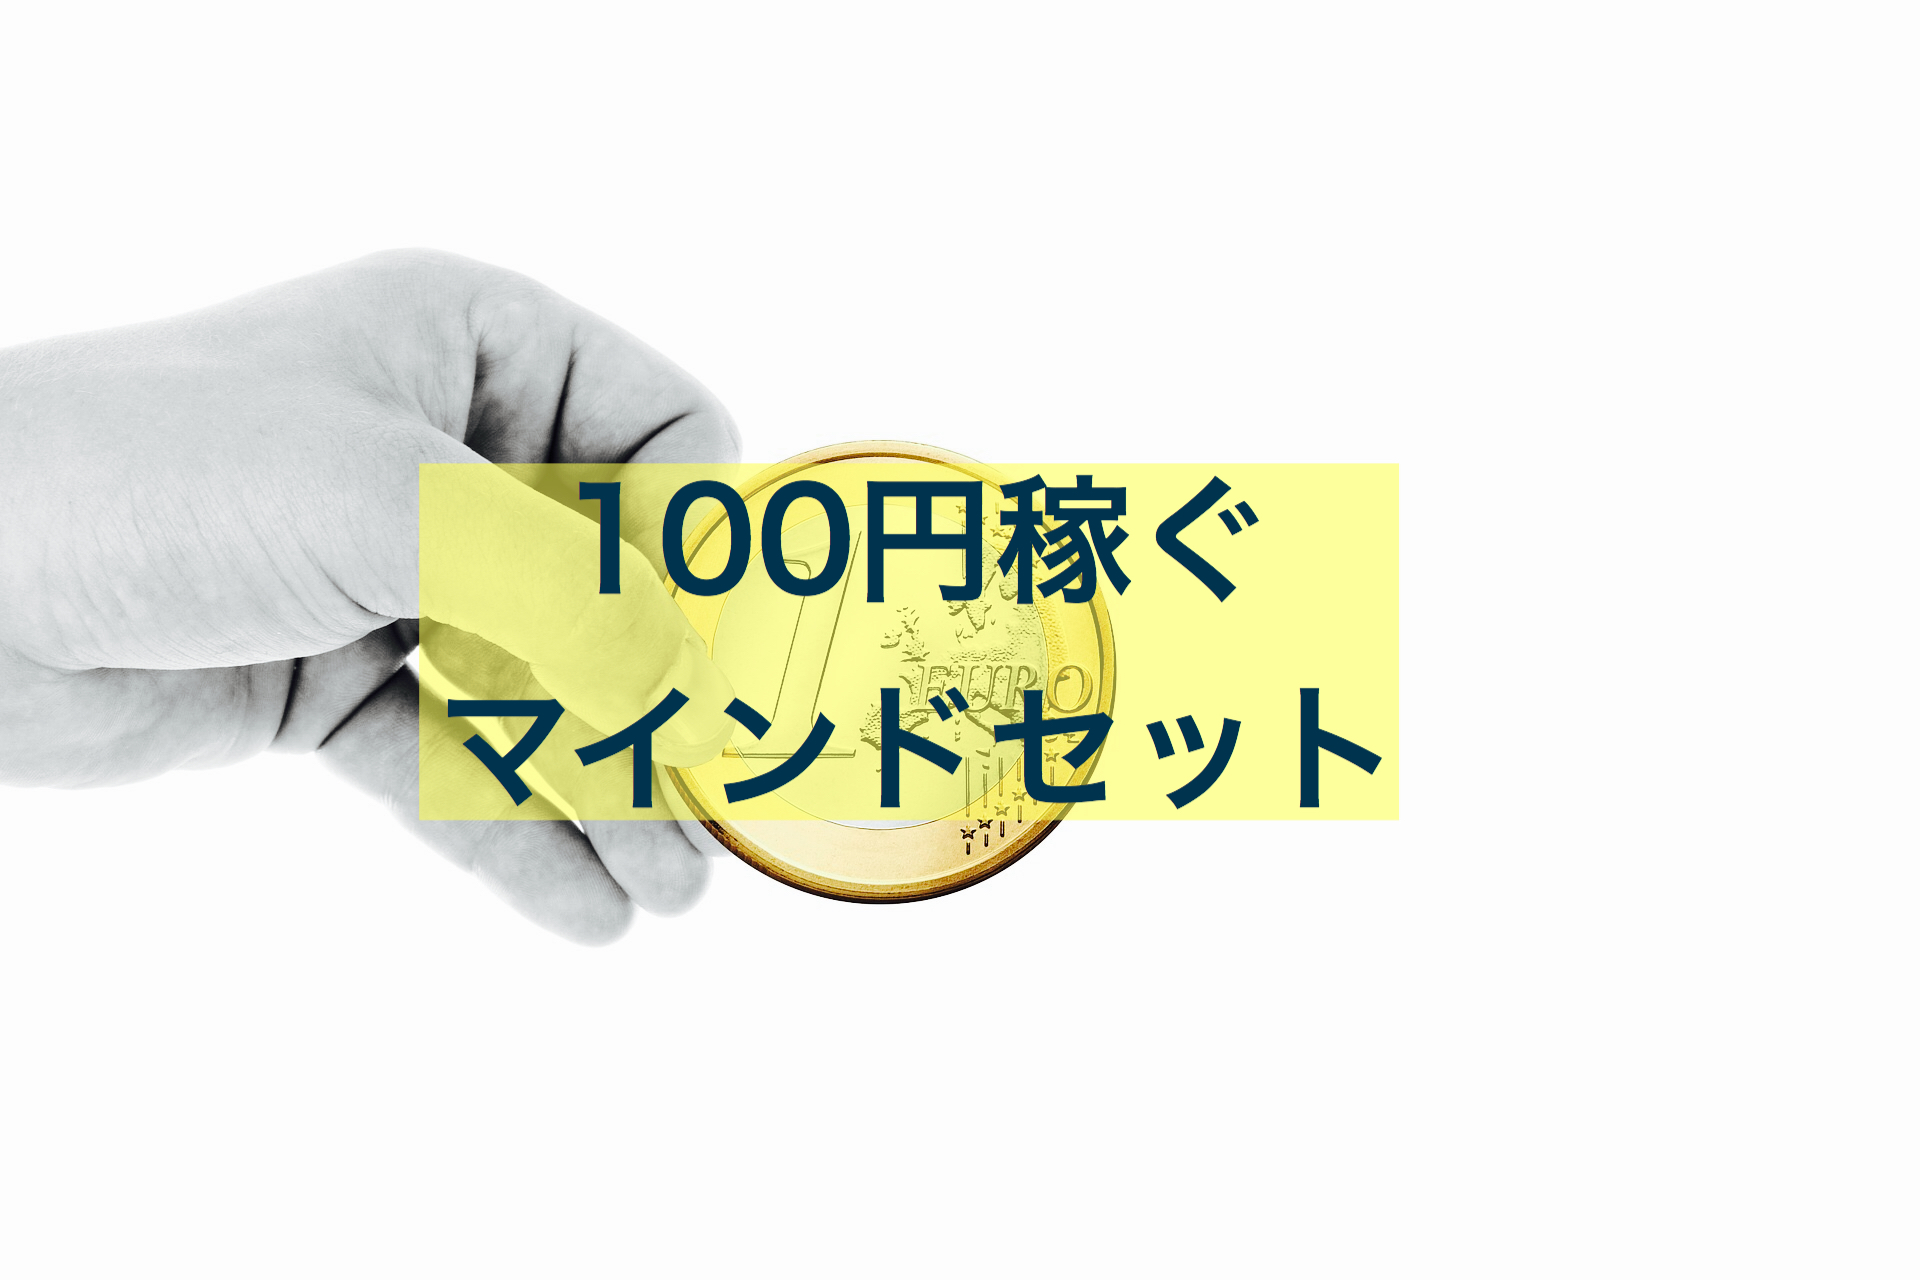 【治療院経営】100円稼ぐマインドセット